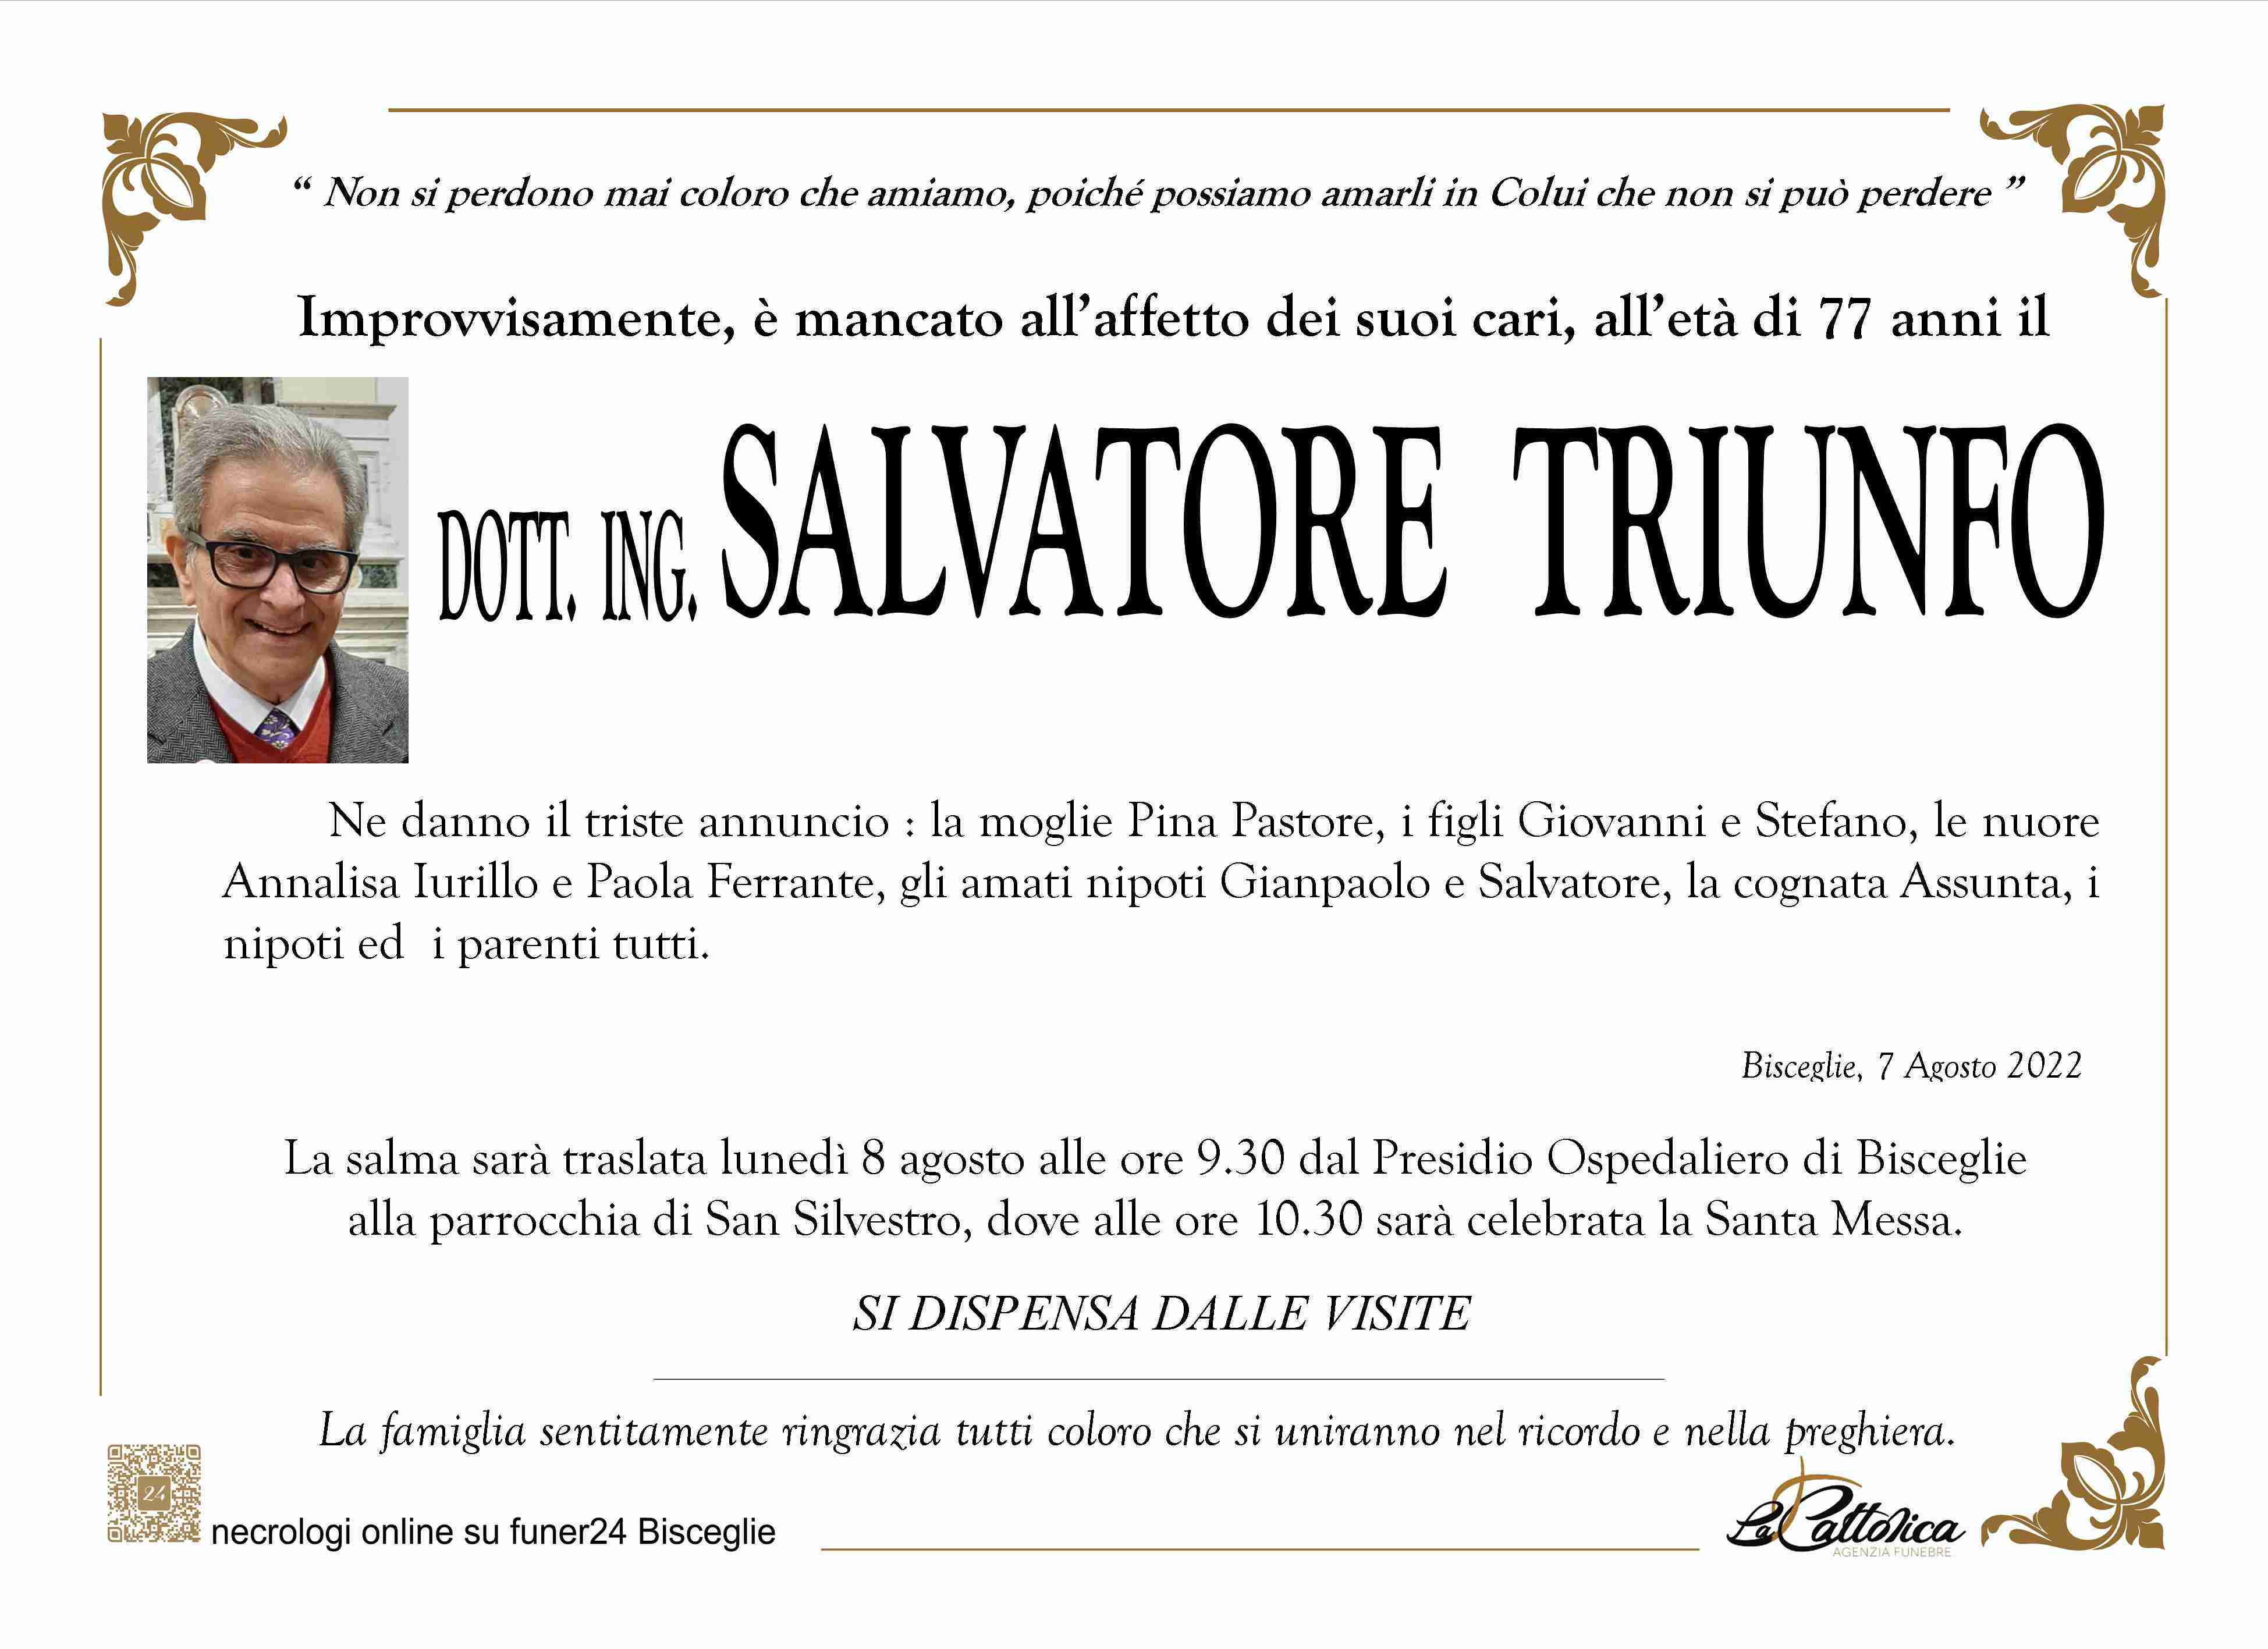 Salvatore Triunfo